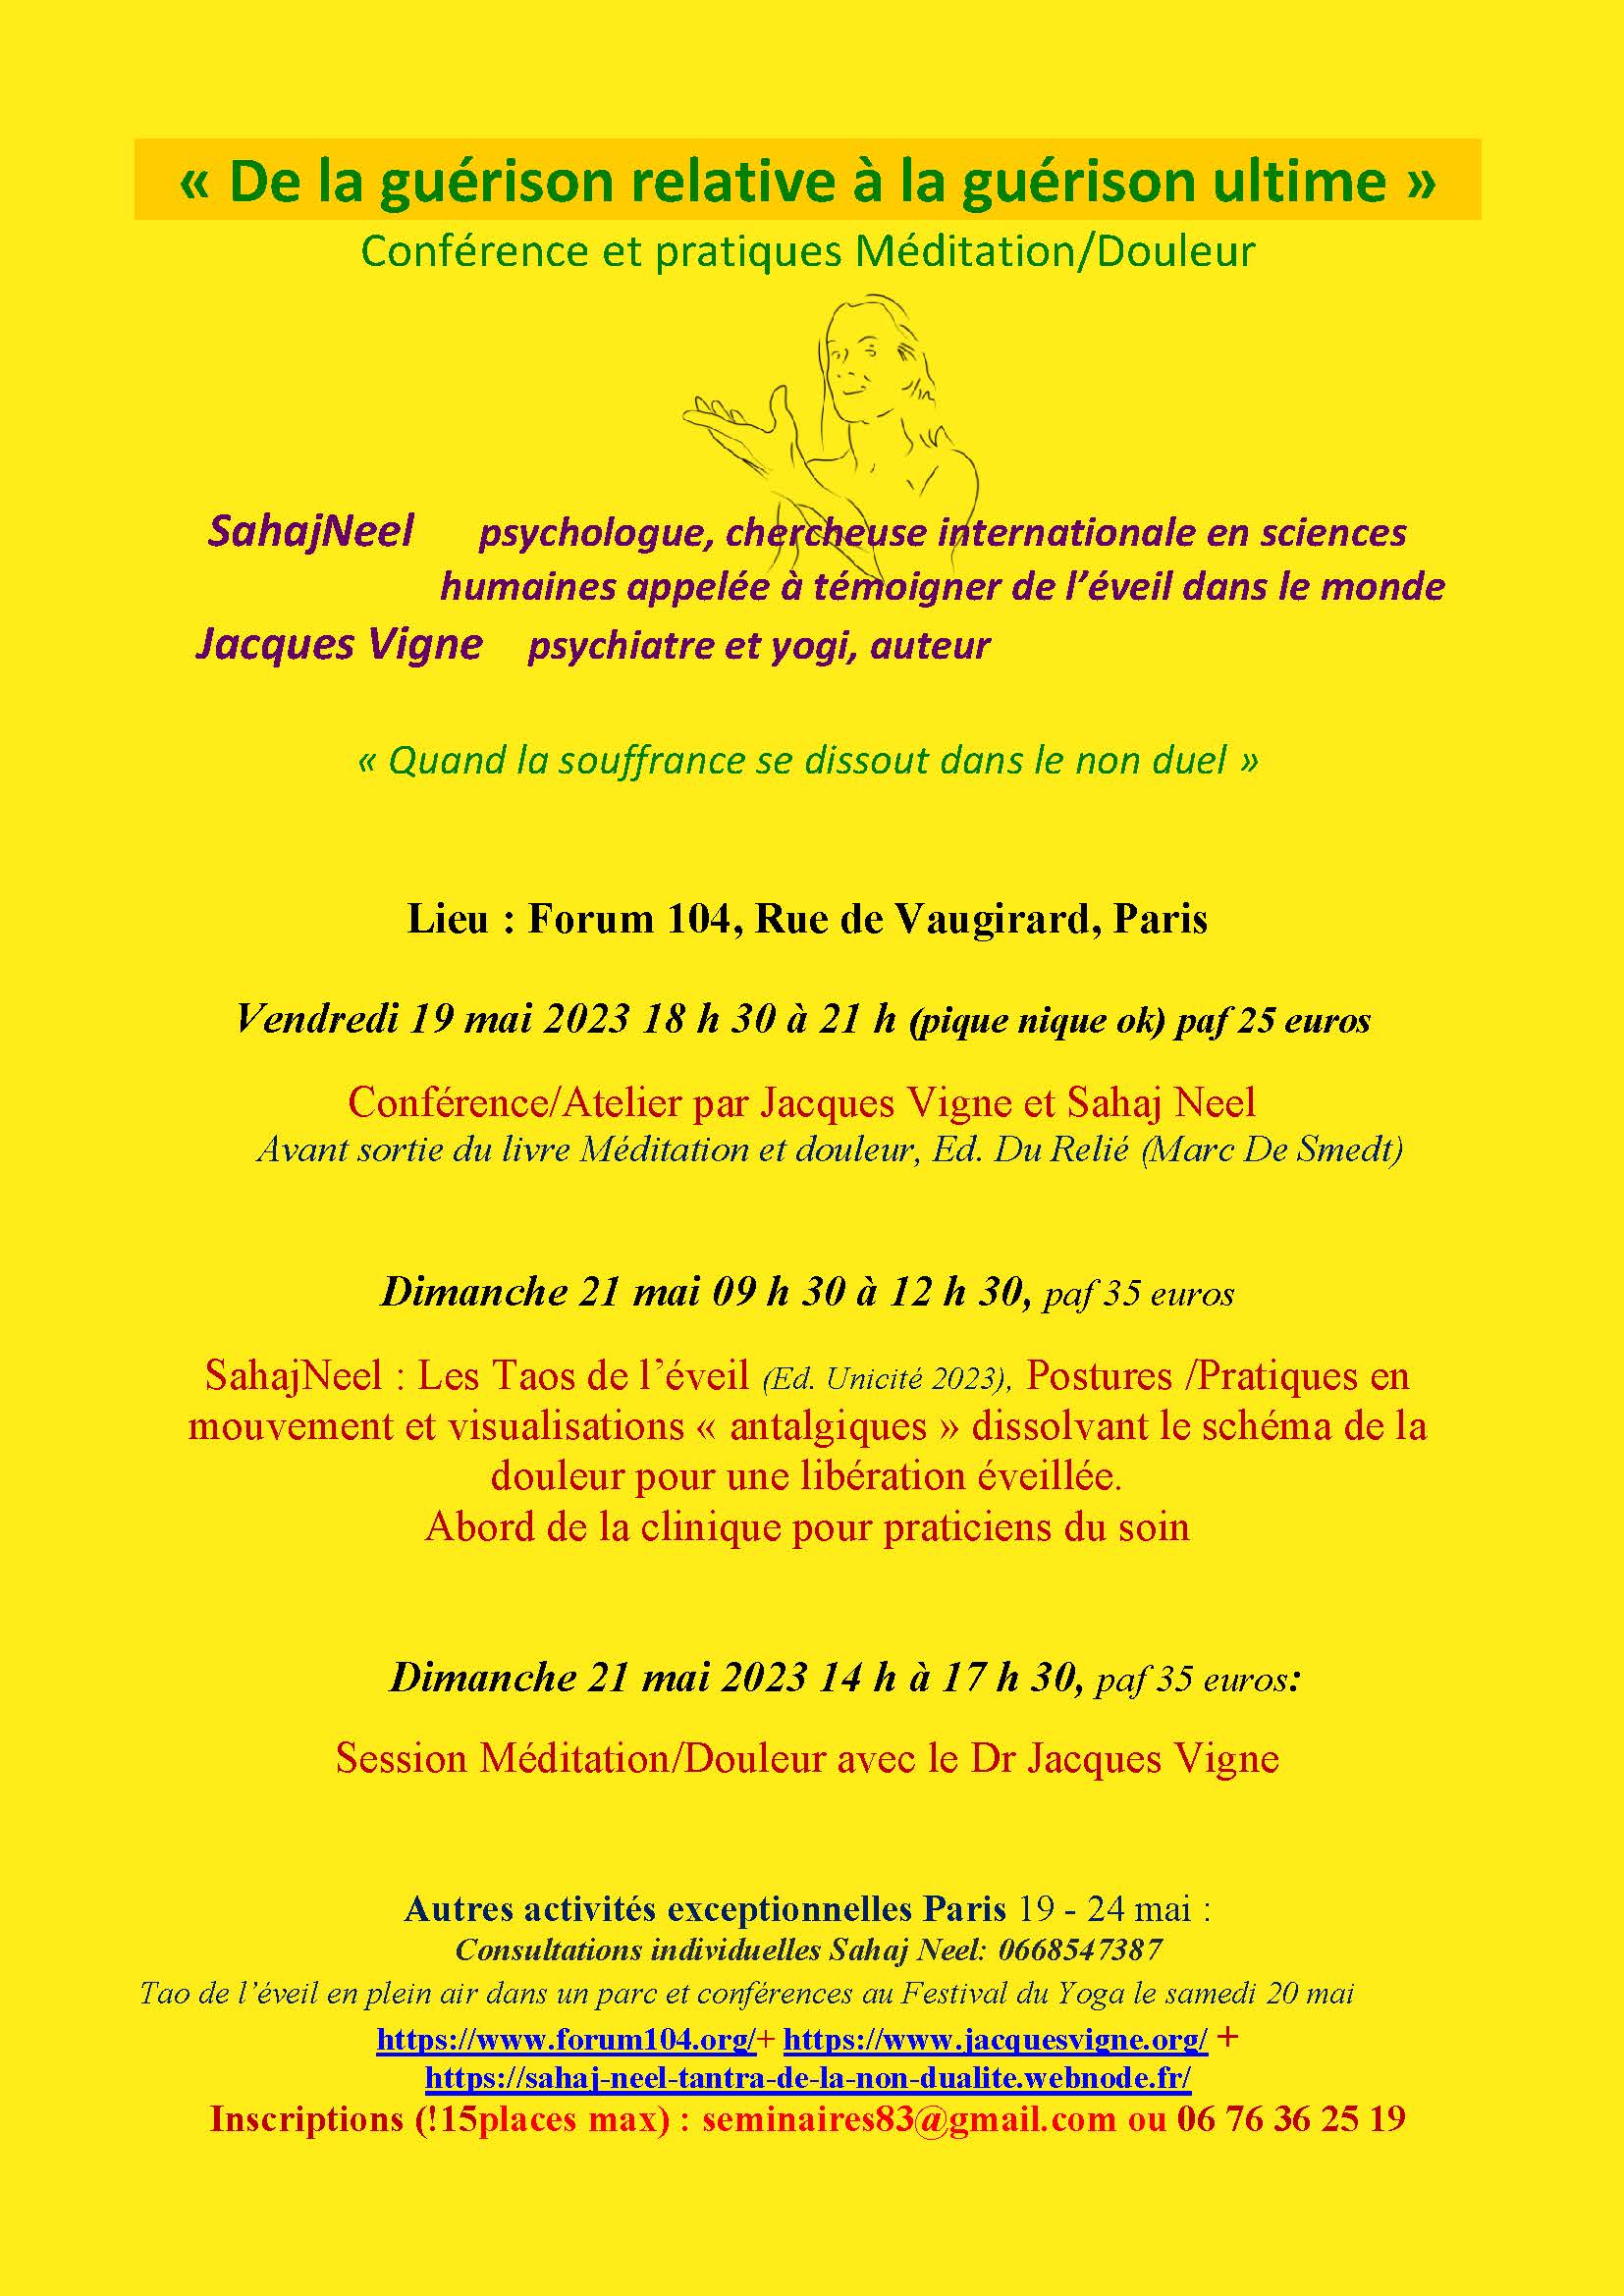 2023.05.Affiche_Conferences_Ateliers_Jacques_Vigne_Sahaj_Neel_Forum_104_Yoga_Festival_Paris